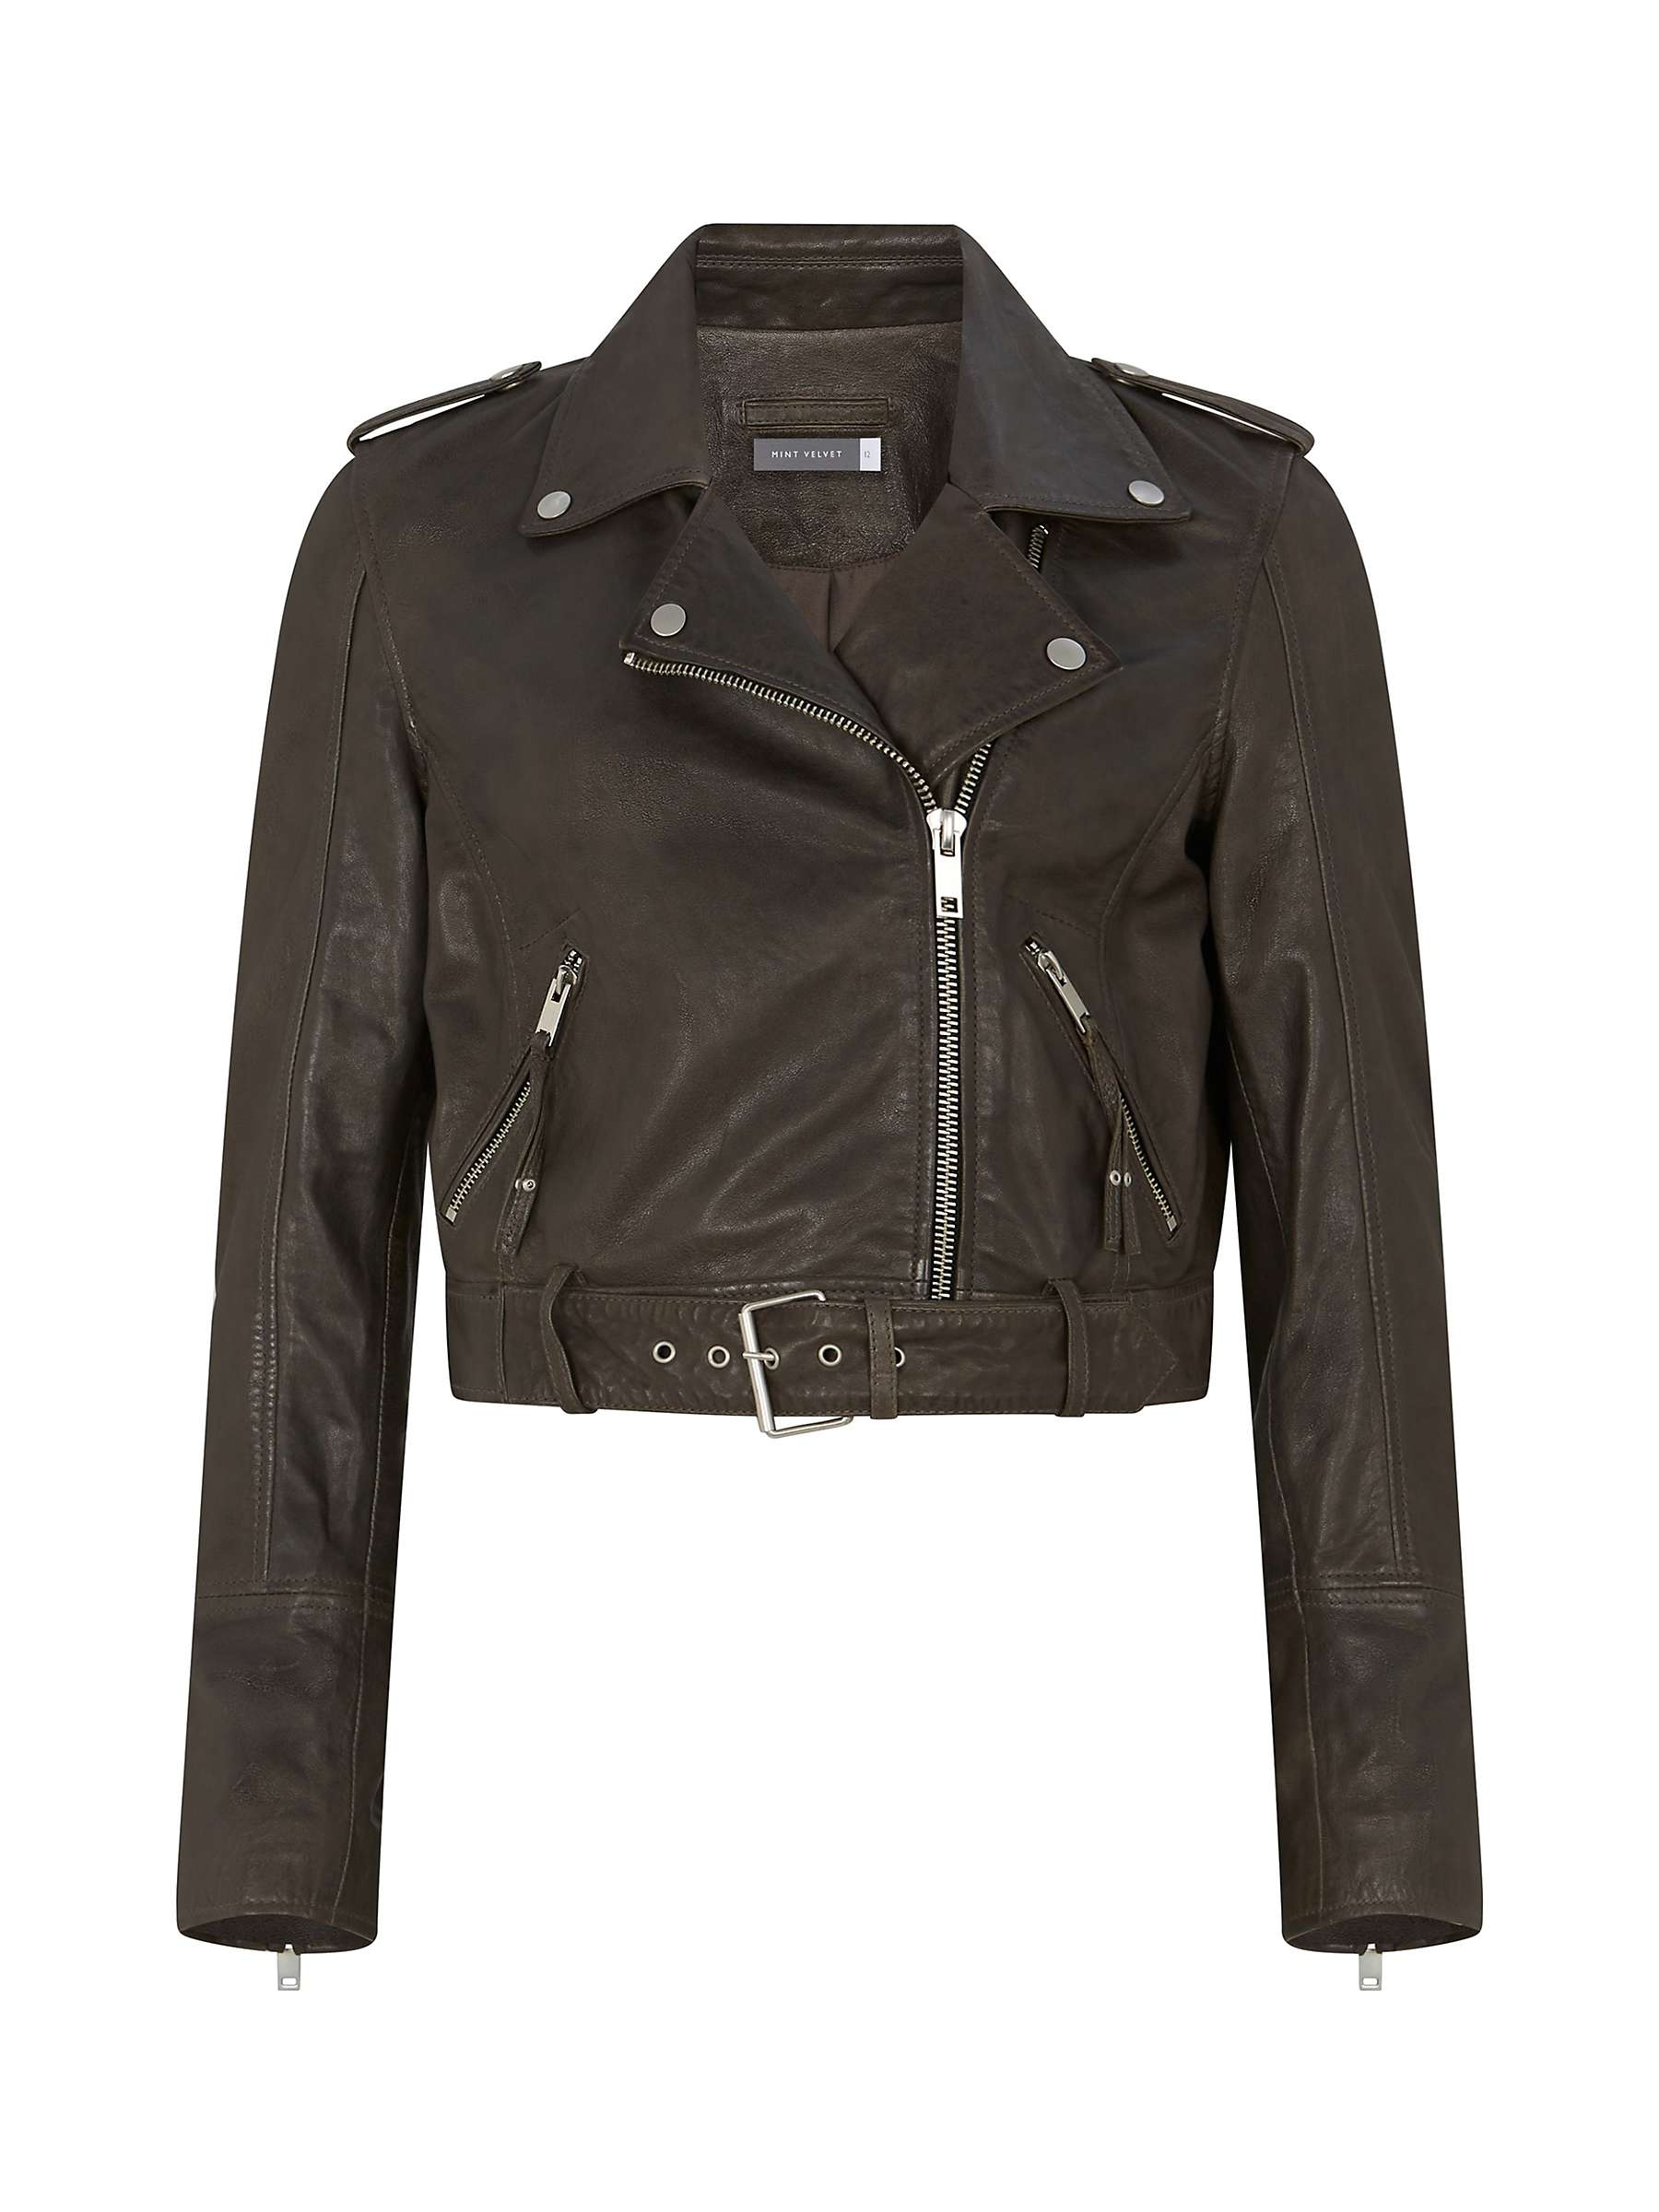 Buy Mint Velvet Belted Leather Biker Jacket Online at johnlewis.com